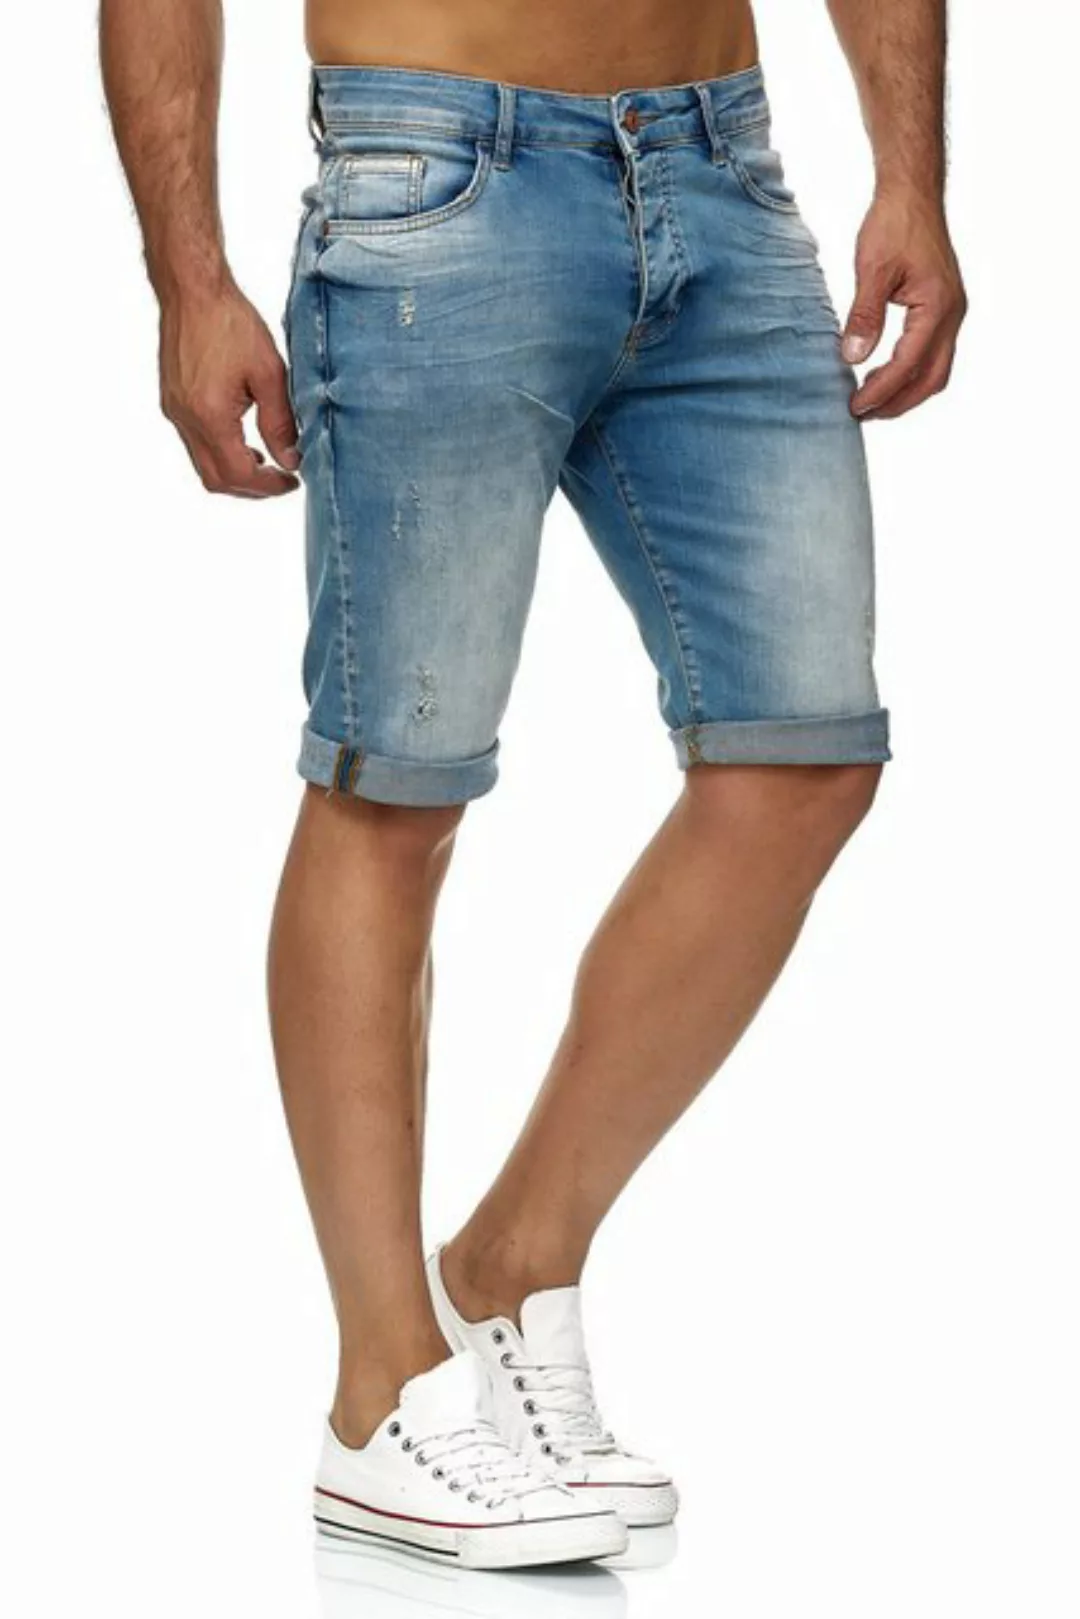 RedBridge Jeansshorts Red Bridge Herren Jeans Short Kurze Hose Denim Basic günstig online kaufen